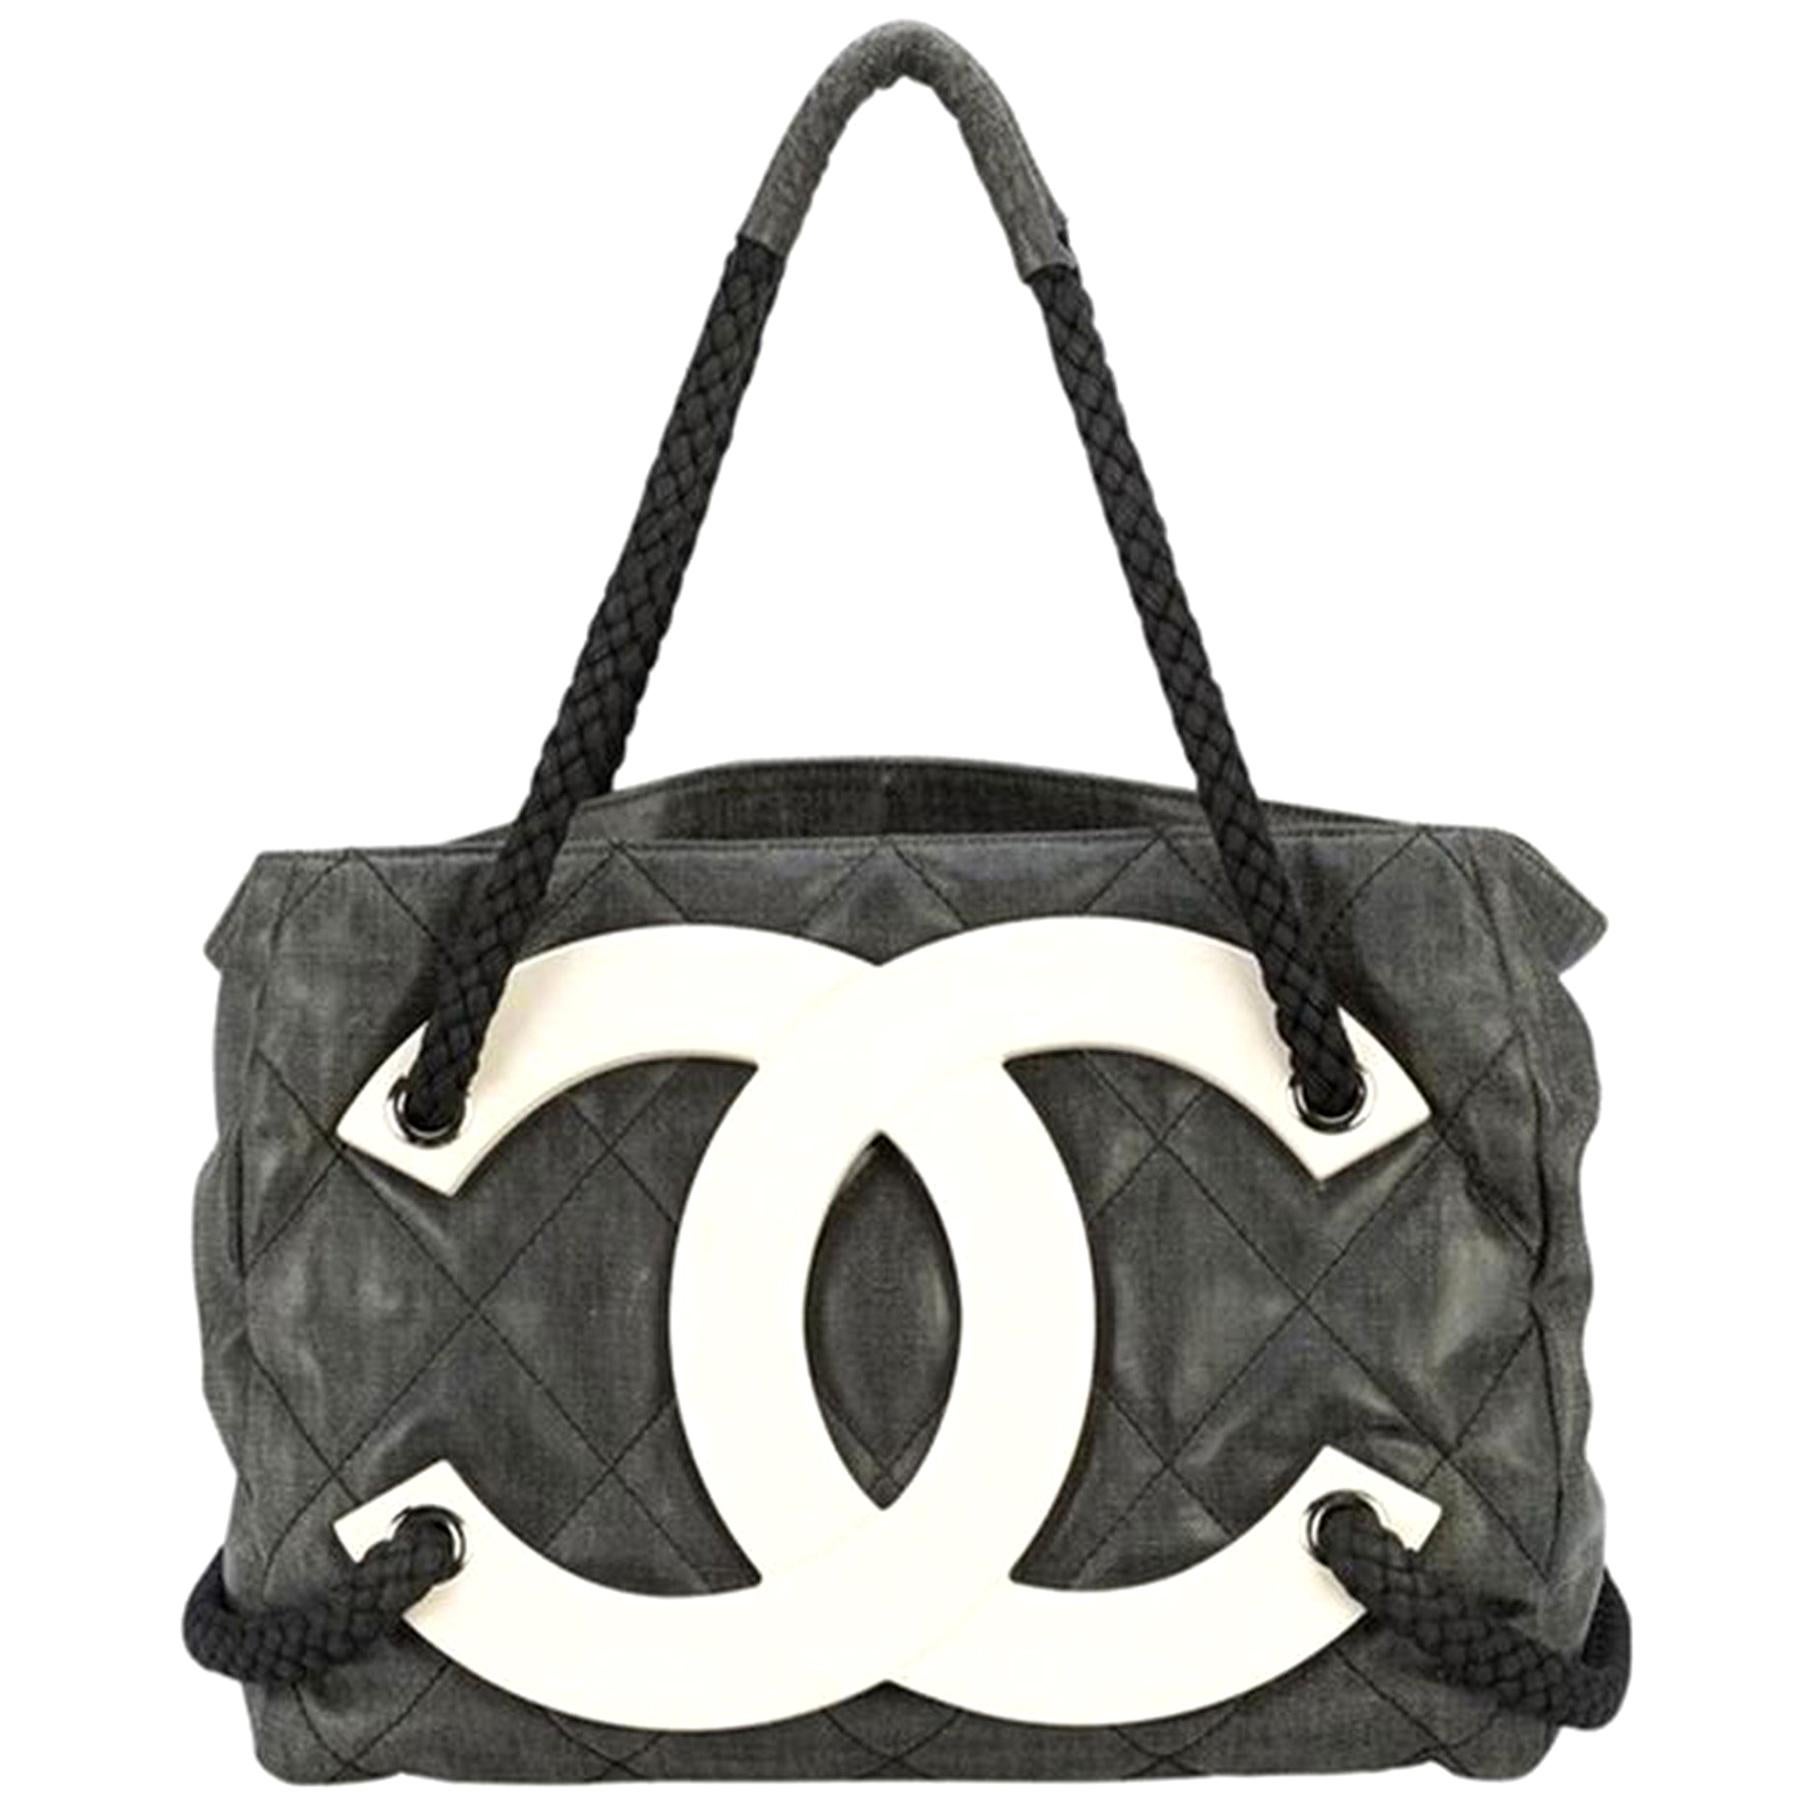 Chanel Rare sac cabas de croisière en toile enduite noire, édition limitée